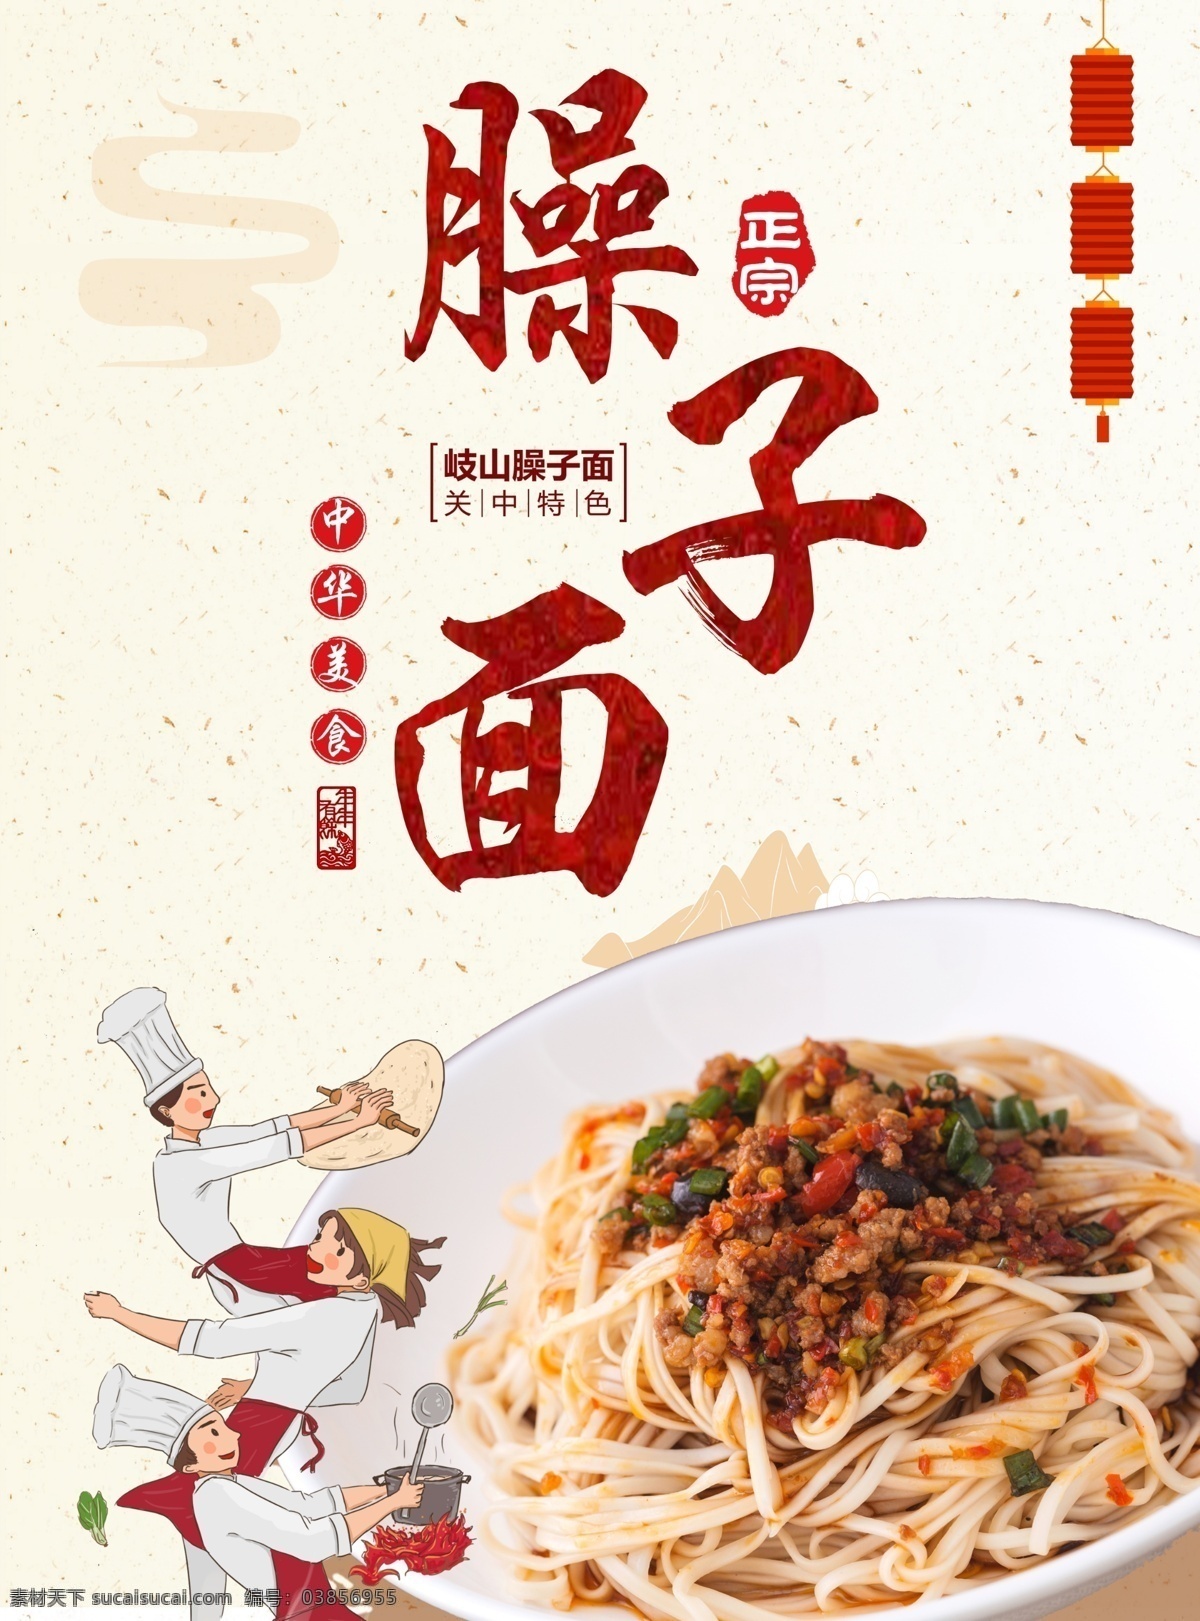 陕西美食 饮食文化 传统美食 中国传统美食 臊子面海报 海报